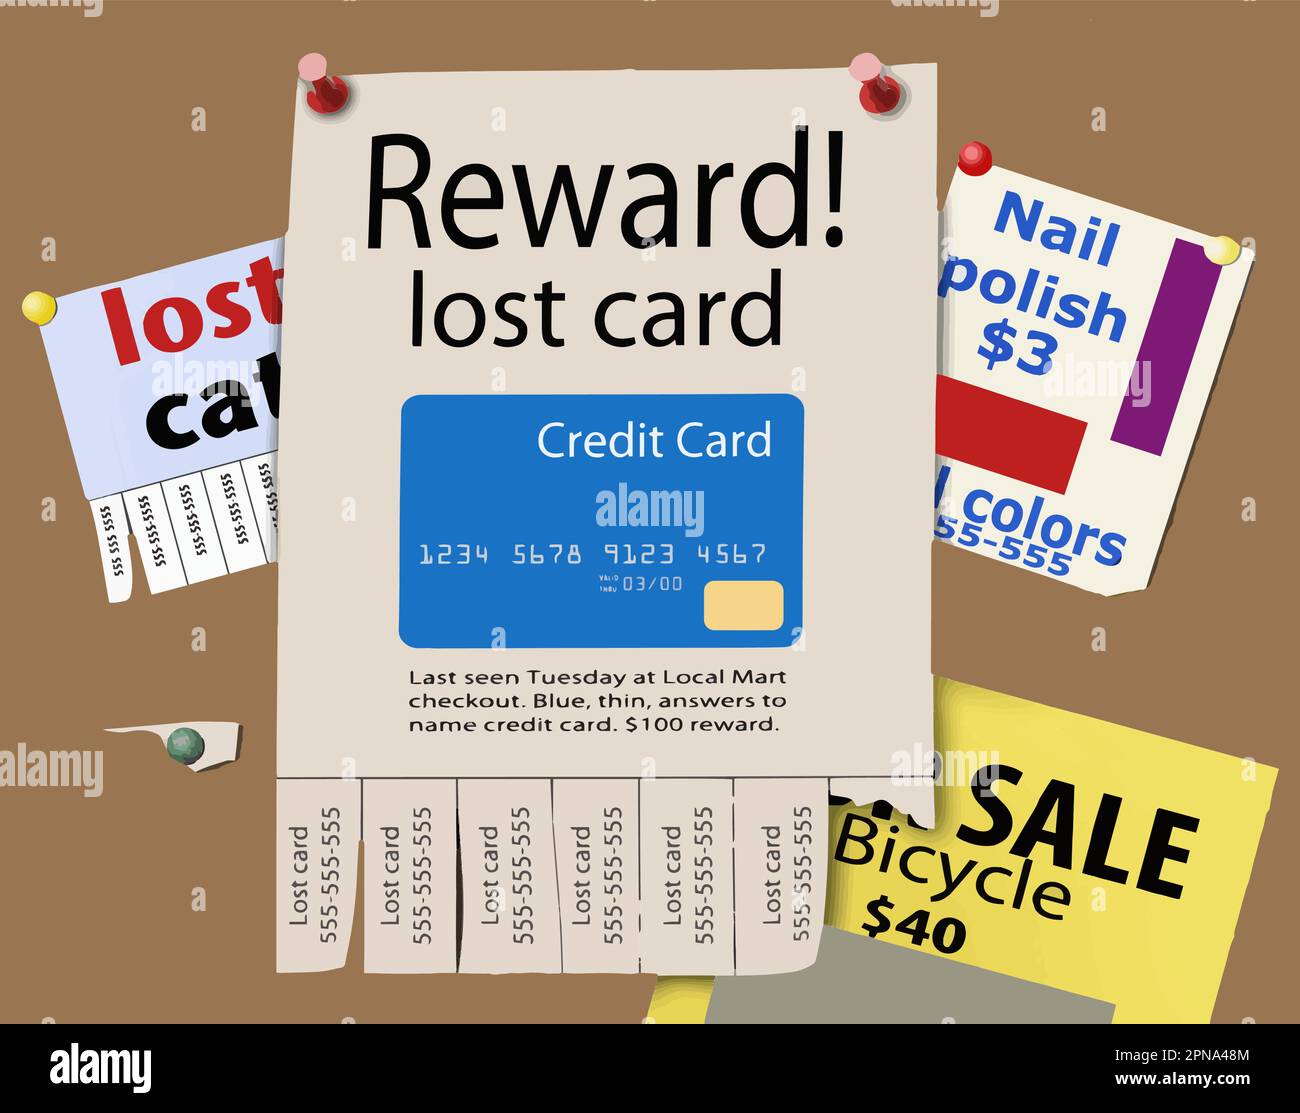 Jemand hat in diesem Vektorbild über die verlorene Karte ein Prämienposter auf einem öffentlichen Bulletin Board für die Rückgabe einer verlorenen Kreditkarte gepostet. Stock Vektor